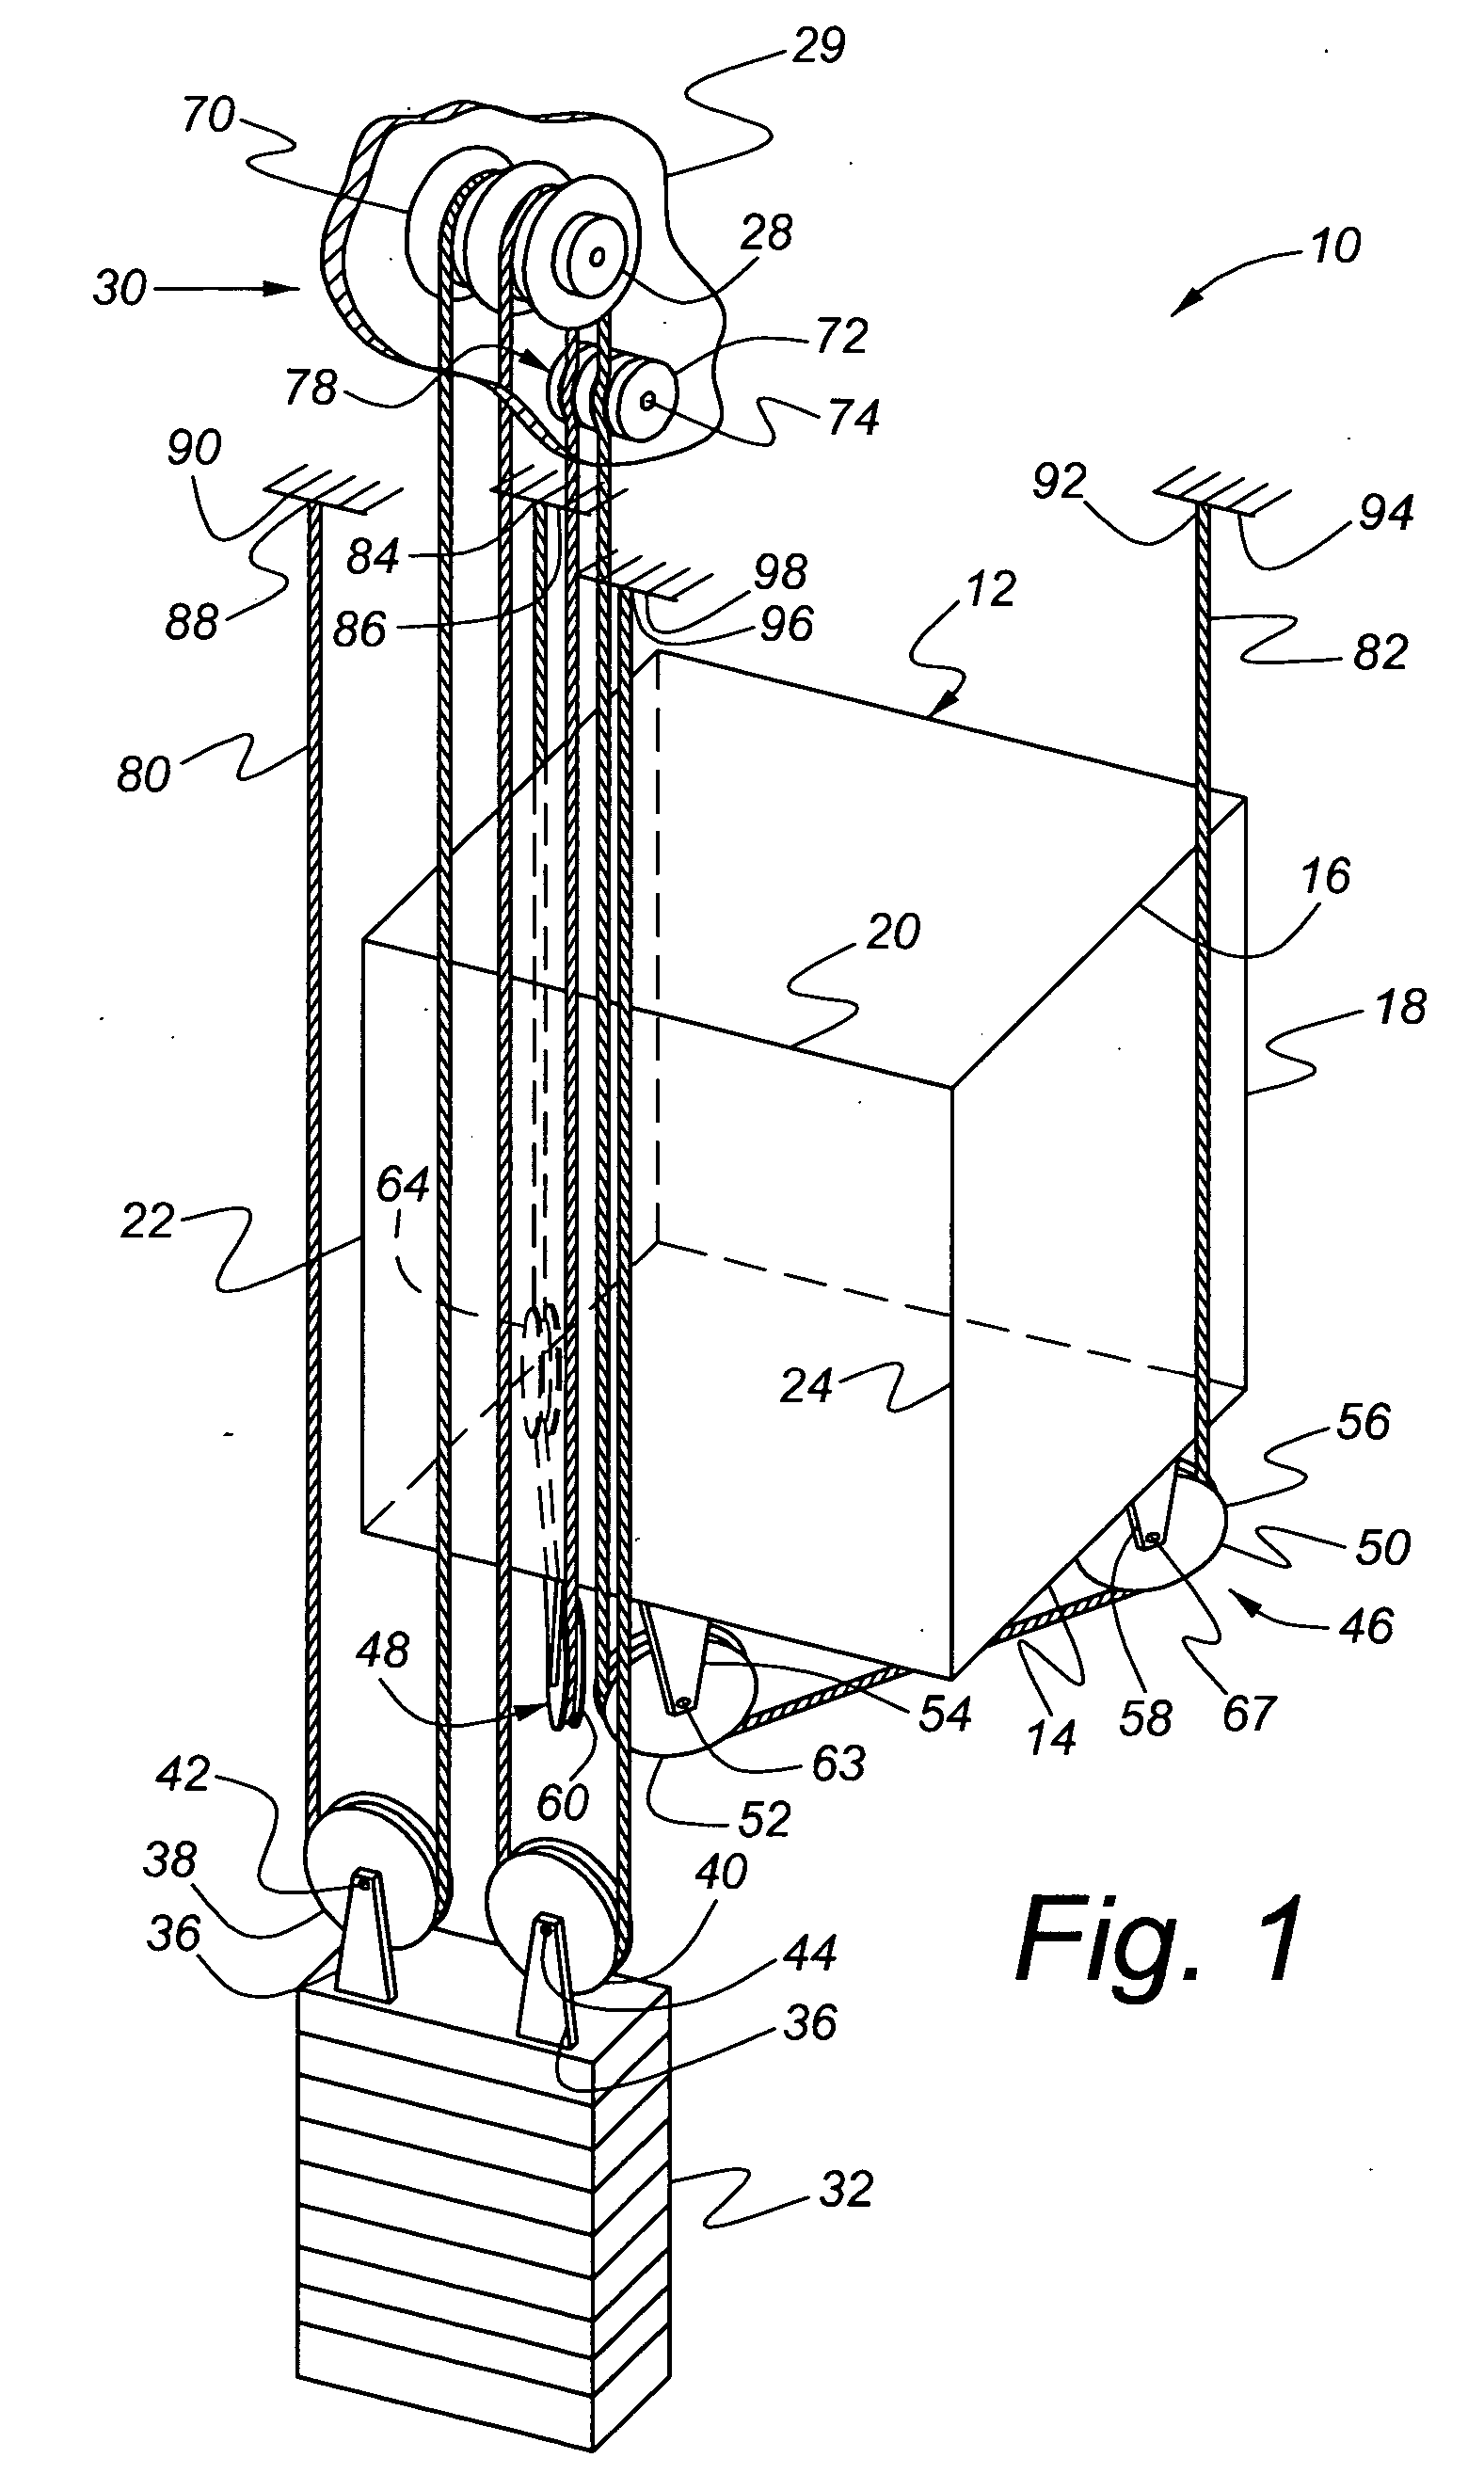 Elevator roping arrangement